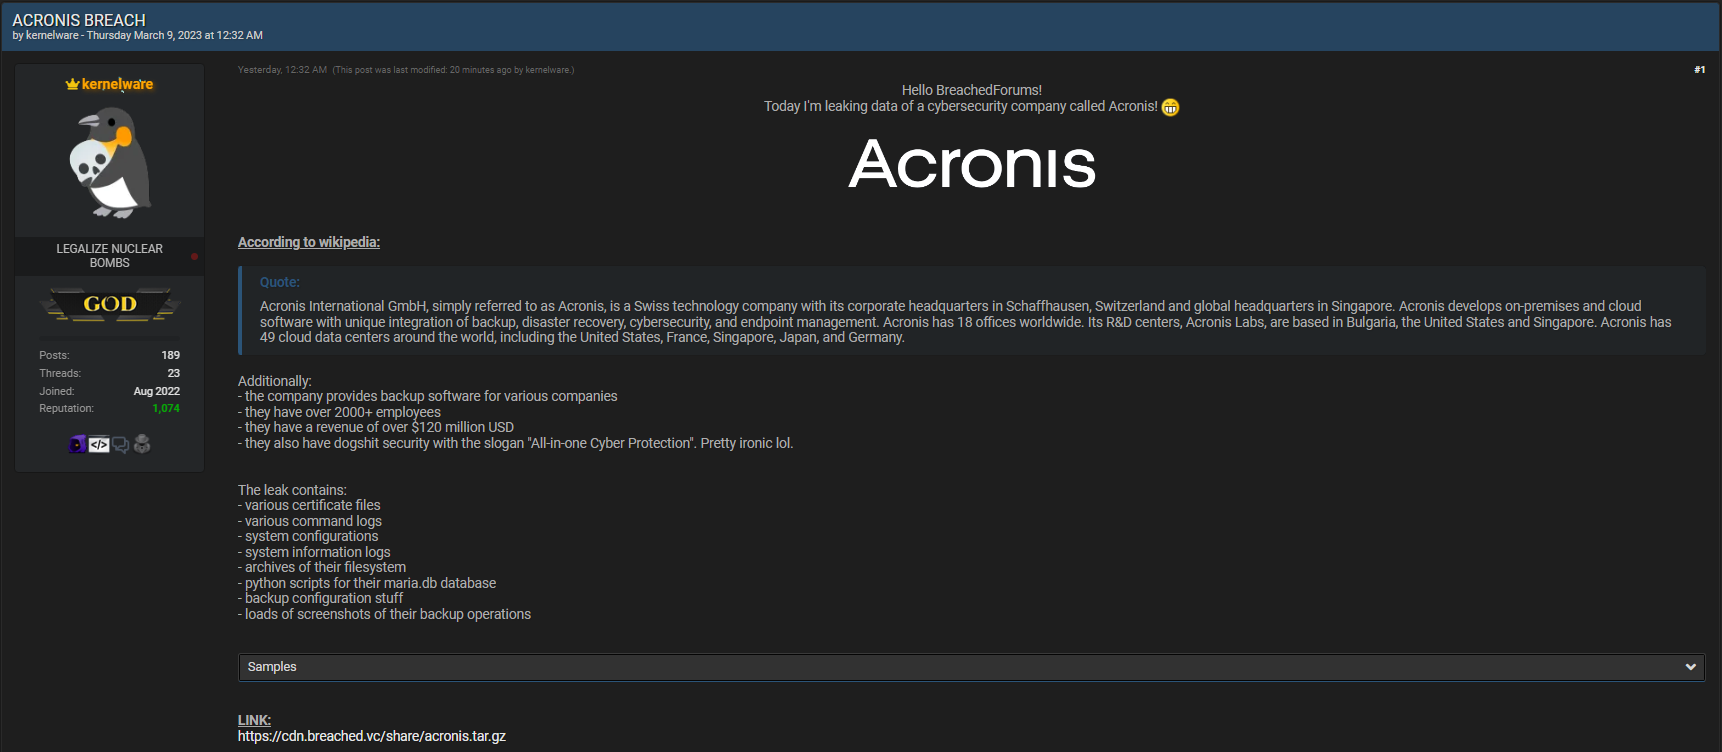 Acronis BreachForum